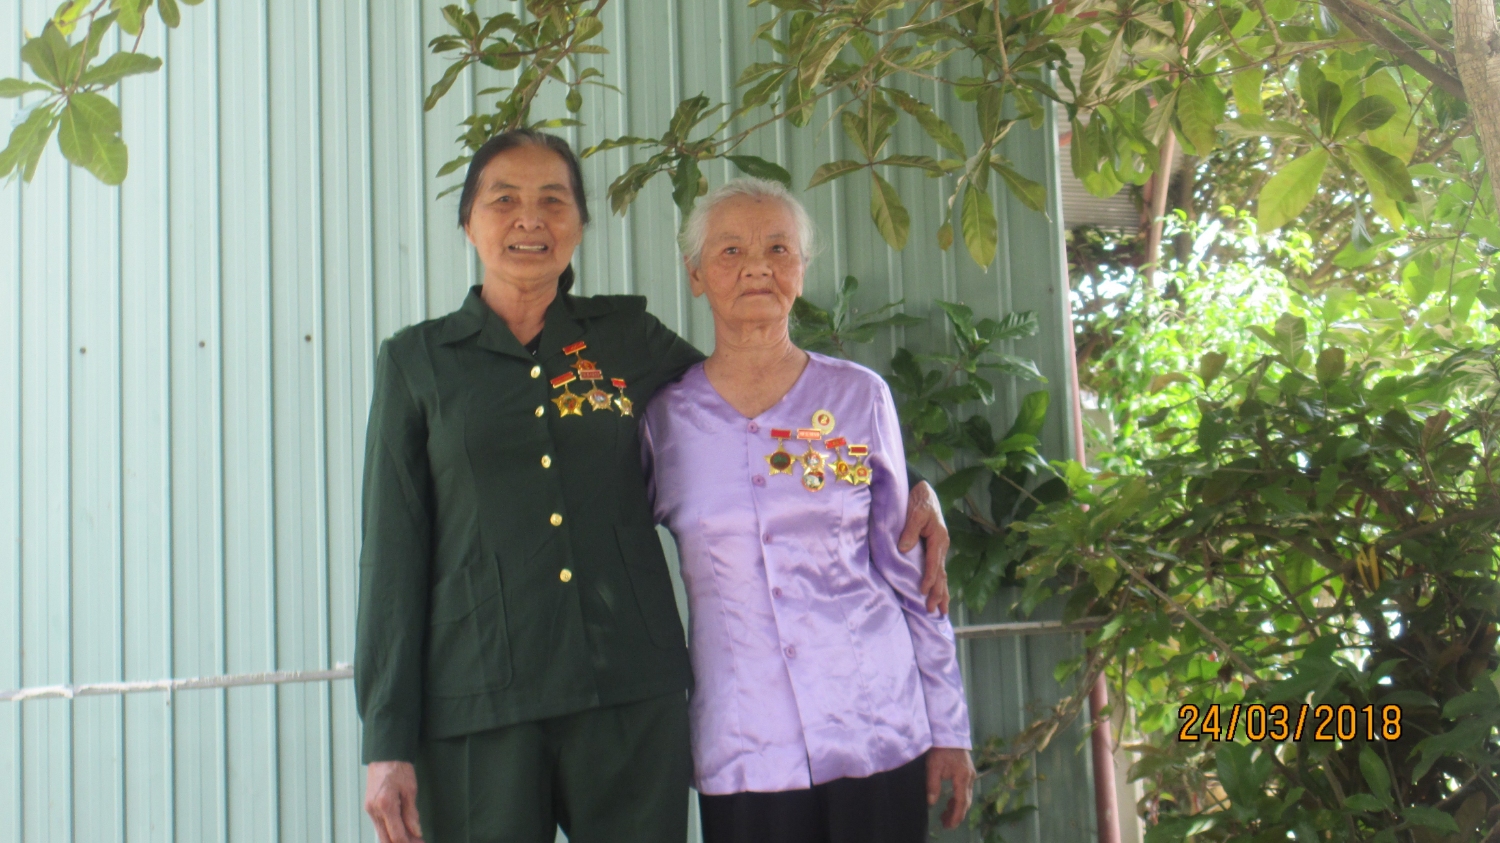 Xạ thủ số 2 Nguyễn Thị Miện và người chỉ huy trung đội 12 li 7 Hoàng Thị Hữu (bà Miện mặc quân phục Cựu chiến binh bên trái, bà Hữu mặc áo quần bà ba bên phải)